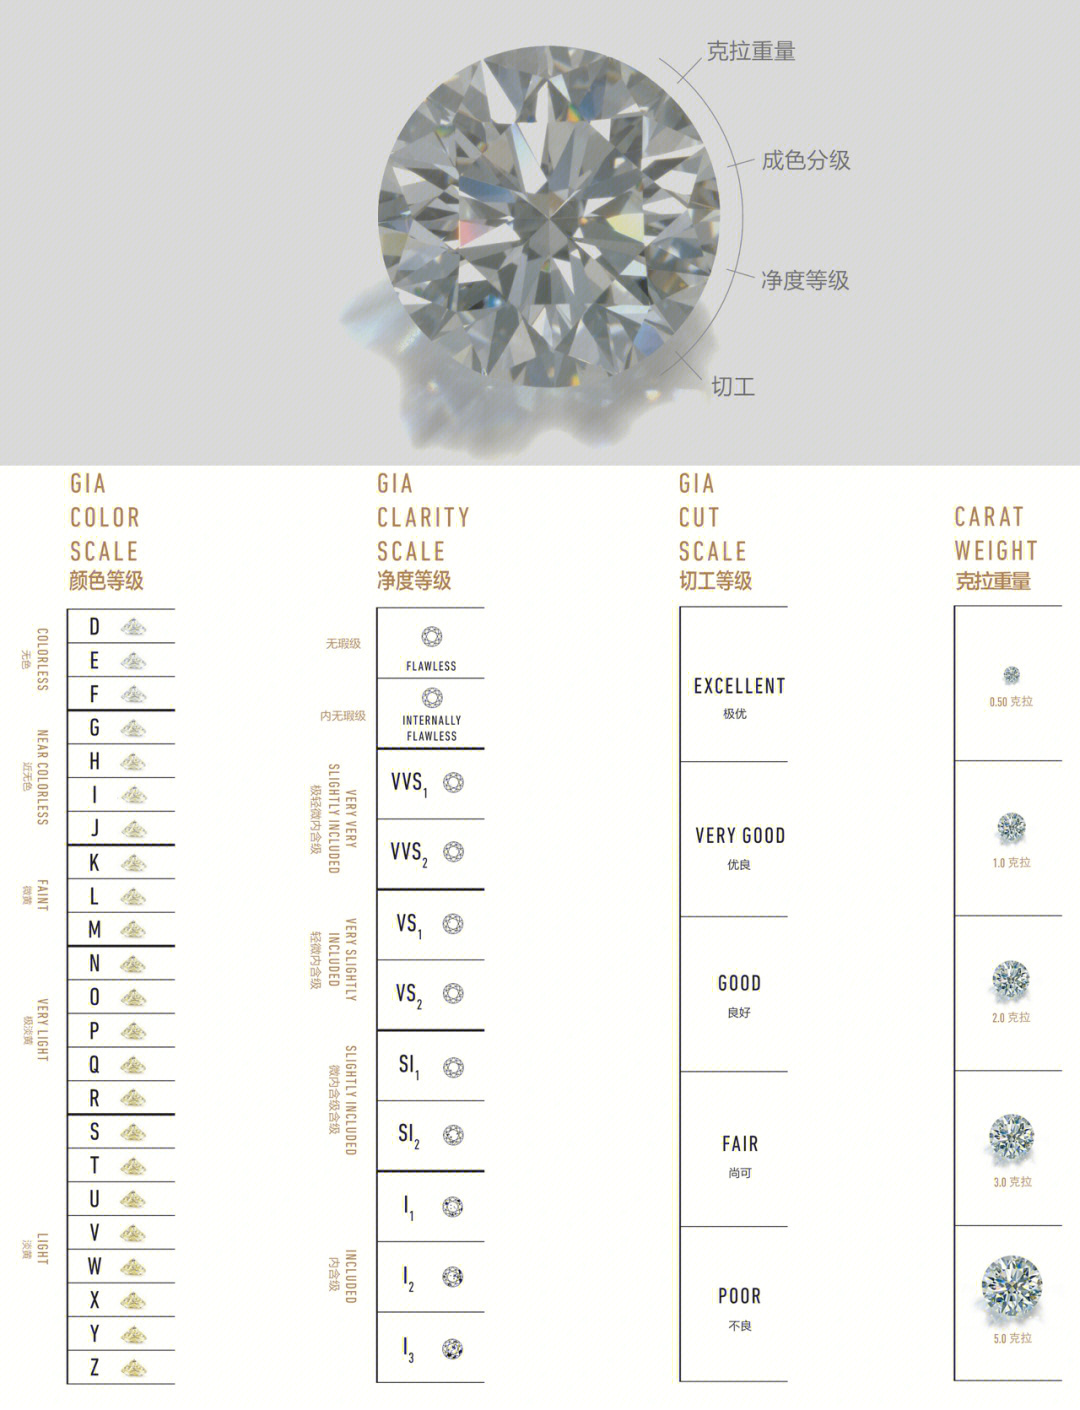 40分的钻石的价格_钻石价格分界点_钻石价格分类